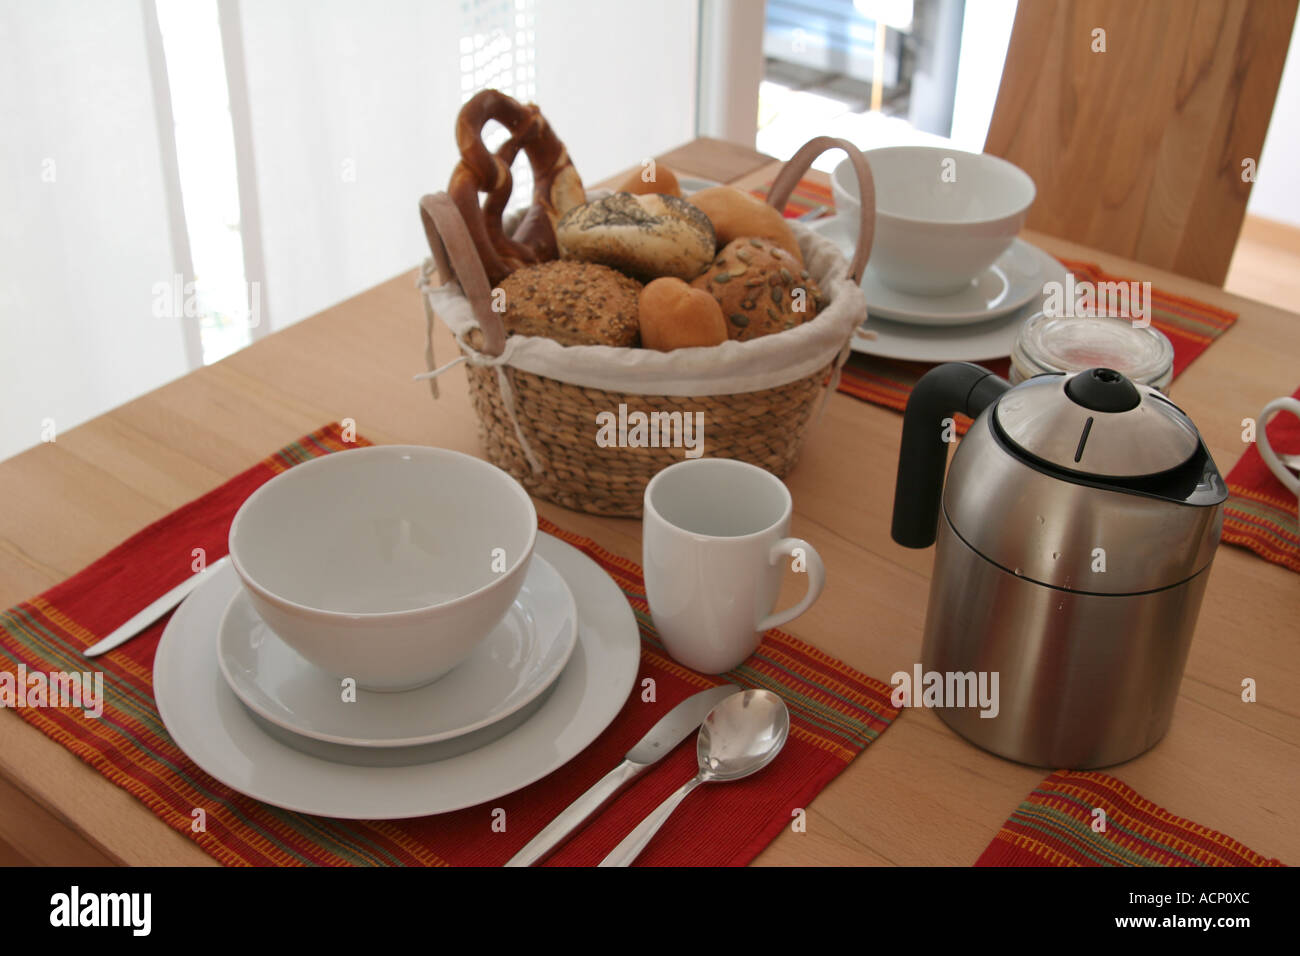 Petit-déjeuner brunch dimanche matin couverts de table week-end - Gedeckter Frühstückstisch Banque D'Images